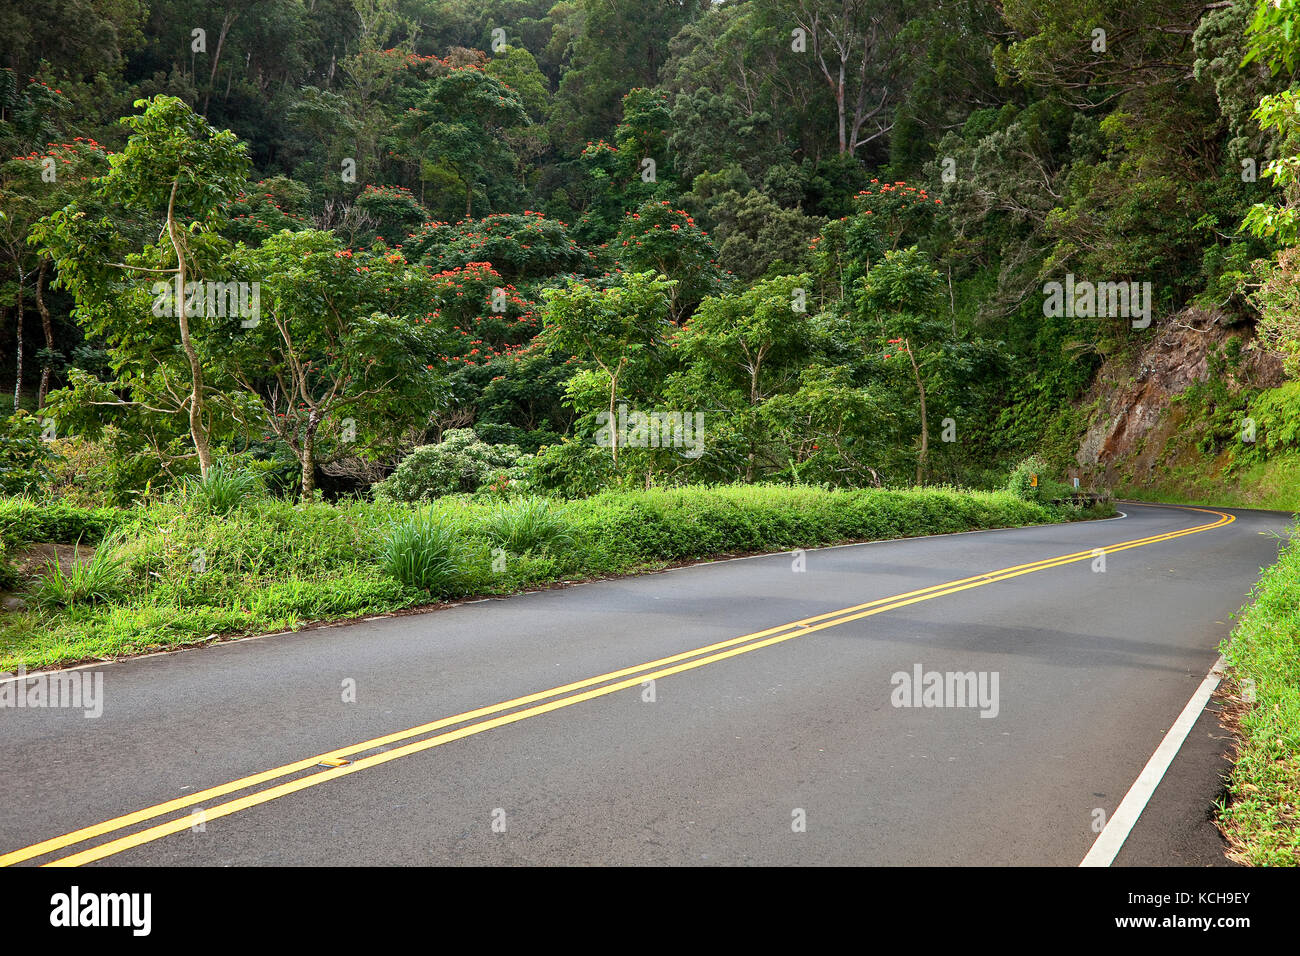 Highway 360 (road to Hana) winds its way through east Maui rainforest, Maui, Hawaii Stock Photo